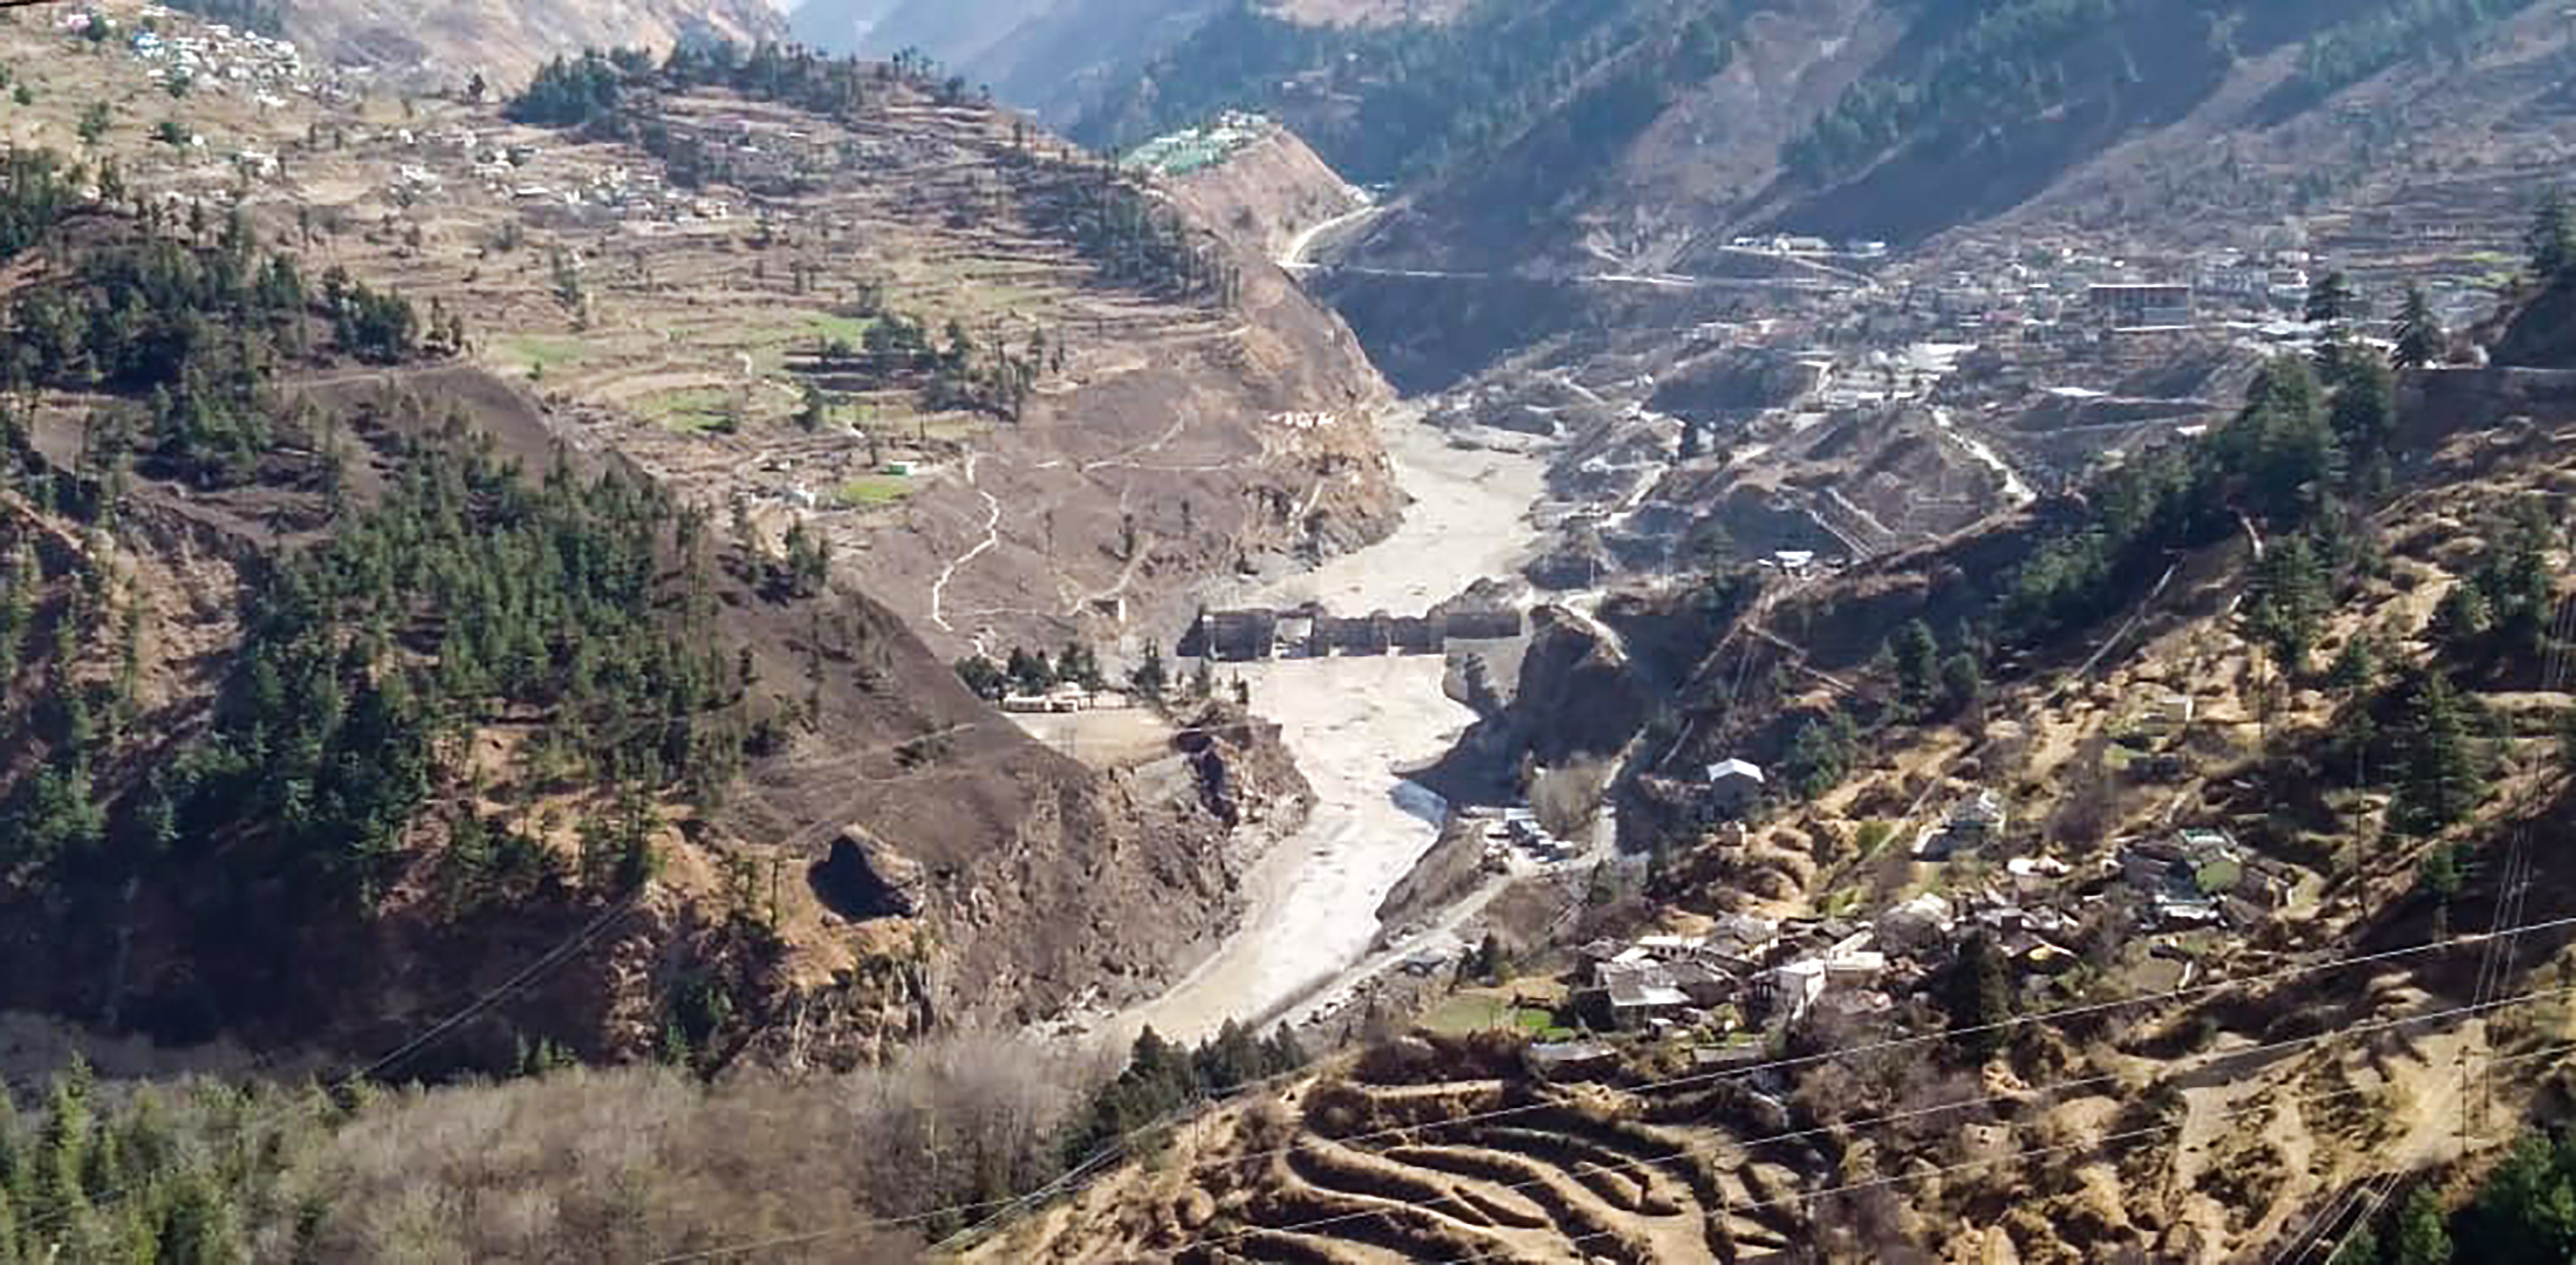 उत्तराखंड के चमोली जिले में ग्लेशियर टूटने से आई भीषण बाढ़ में क्षतिग्रस्त ऋषिगंगा जलविद्युत परियोजना. (फोटो: पीटीआई)